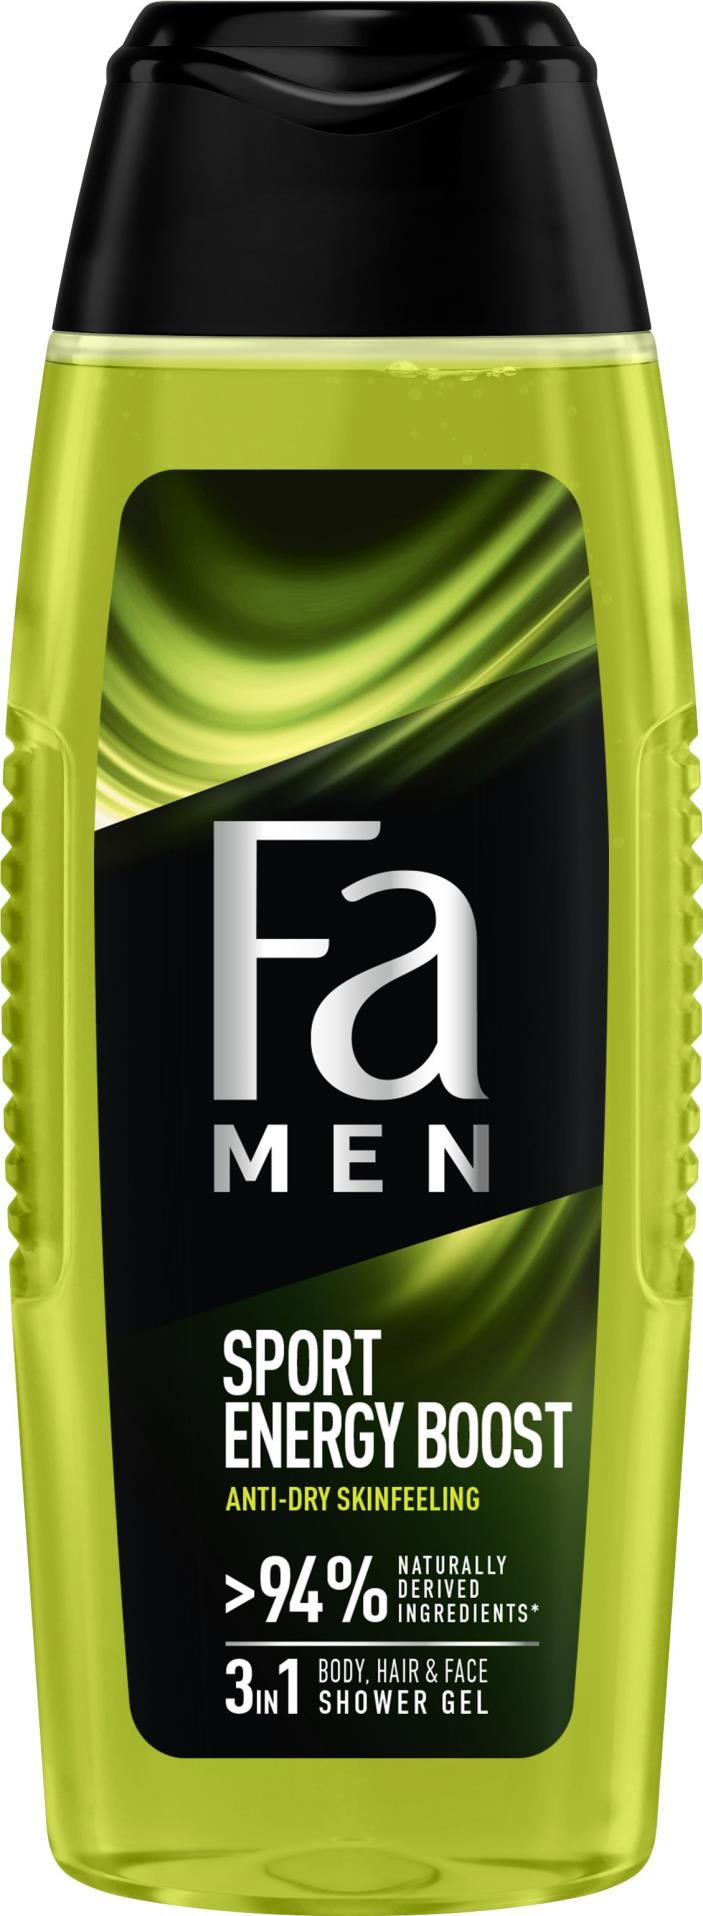 Fa Sprchový gel Fa pro muže - Sport Energy Boost, 250 ml